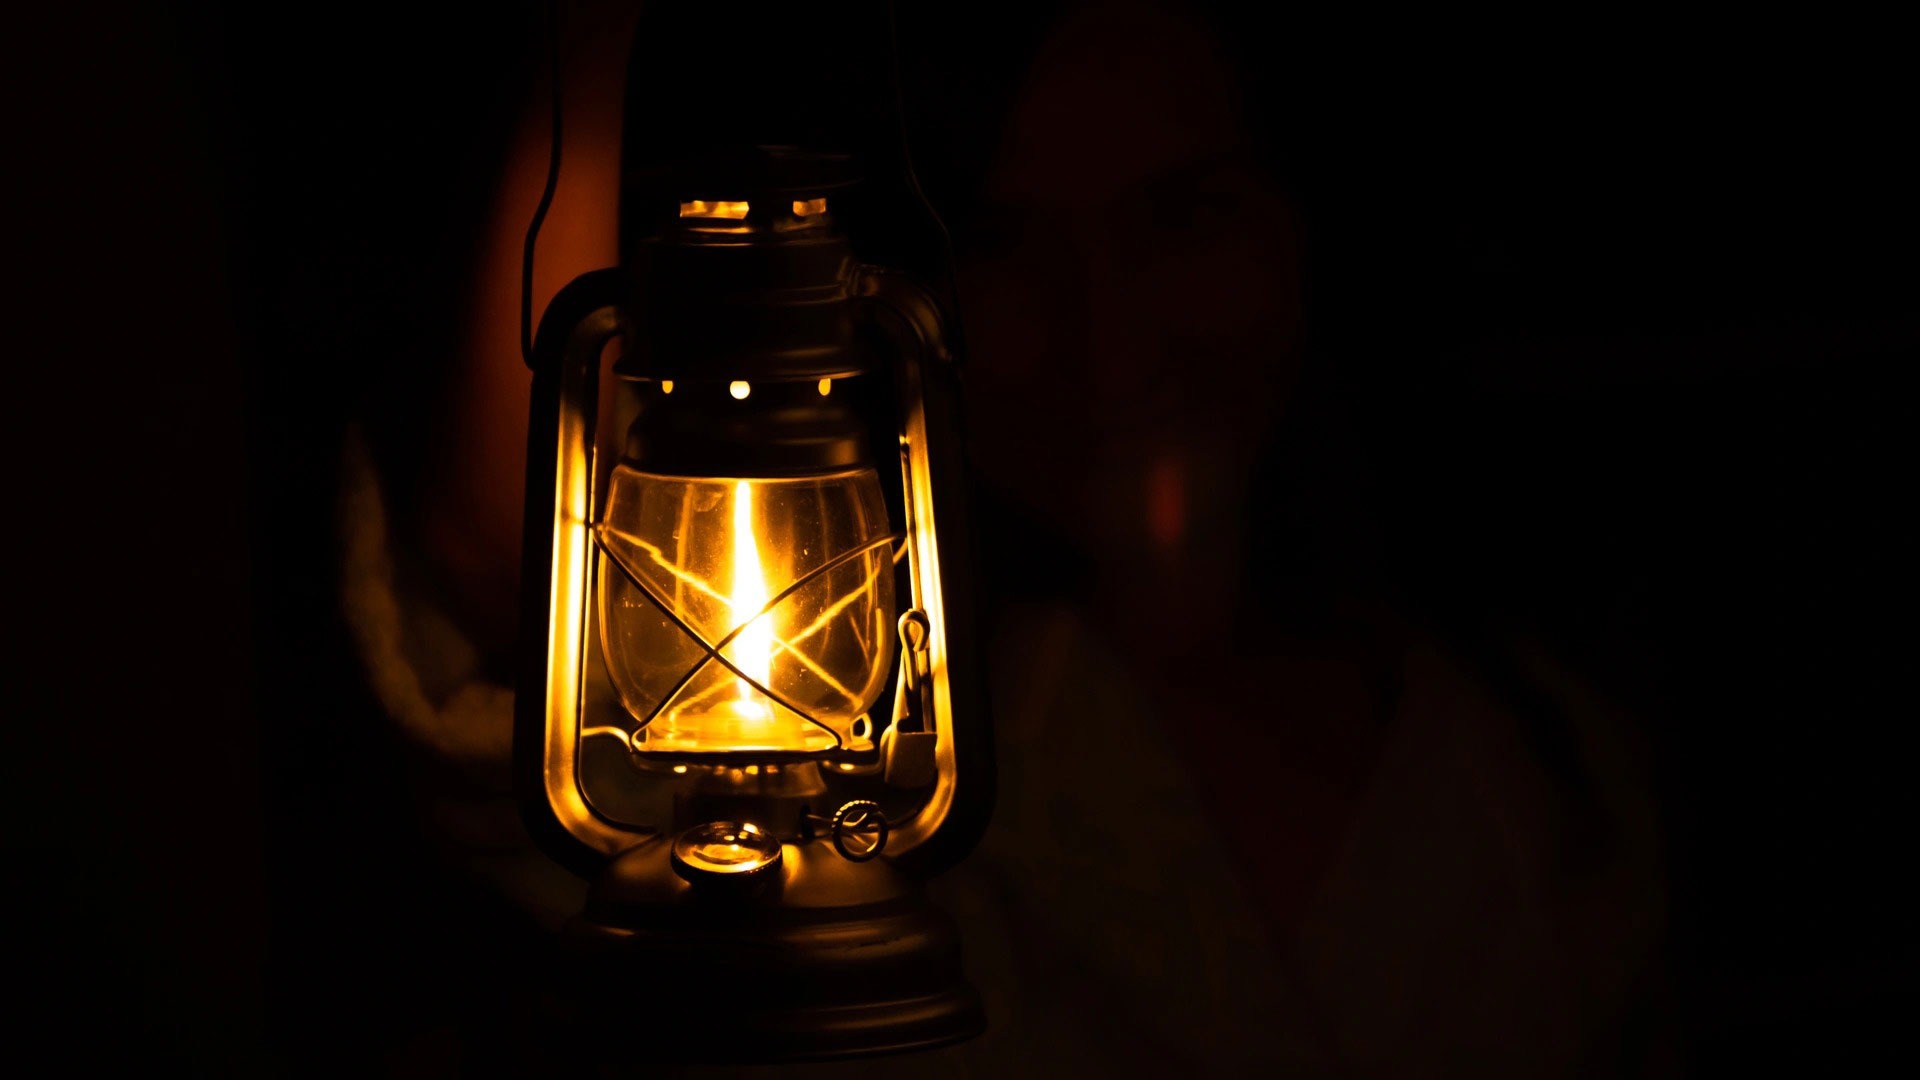 Lit lantern on dark background